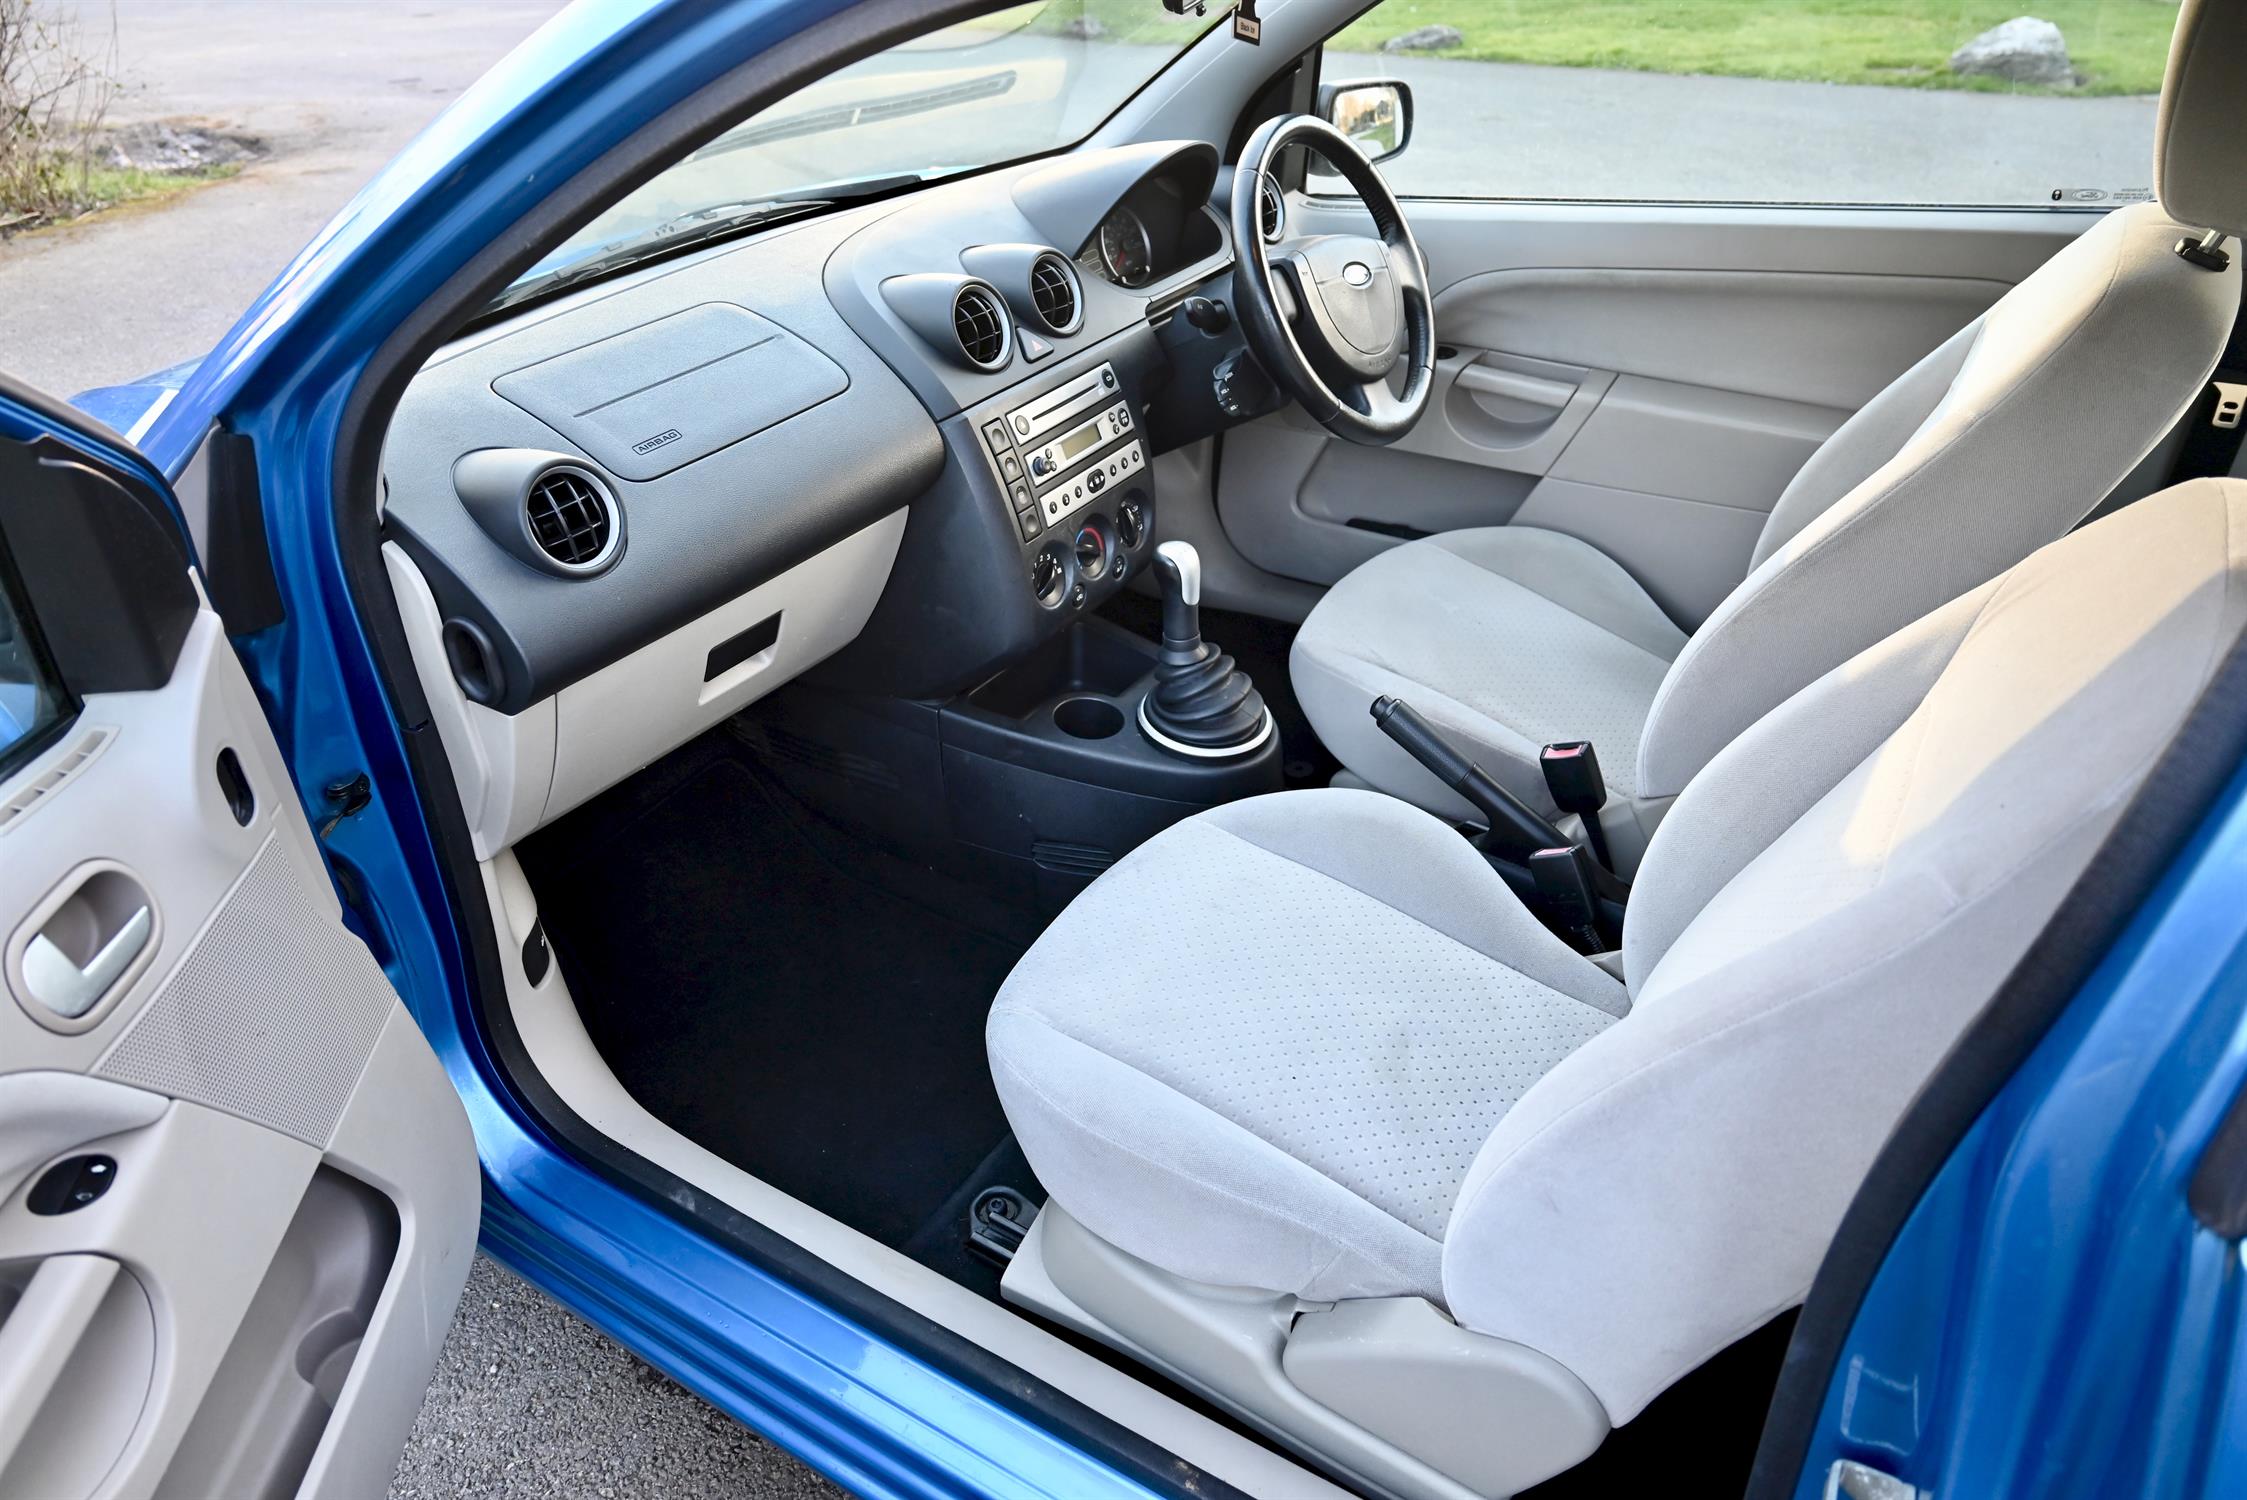 2004 Ford Fiesta 1.4 Ghia 3-door hatchback. Registration number: EO54 JNK. Metallic Aquarius Blue, - Image 8 of 16